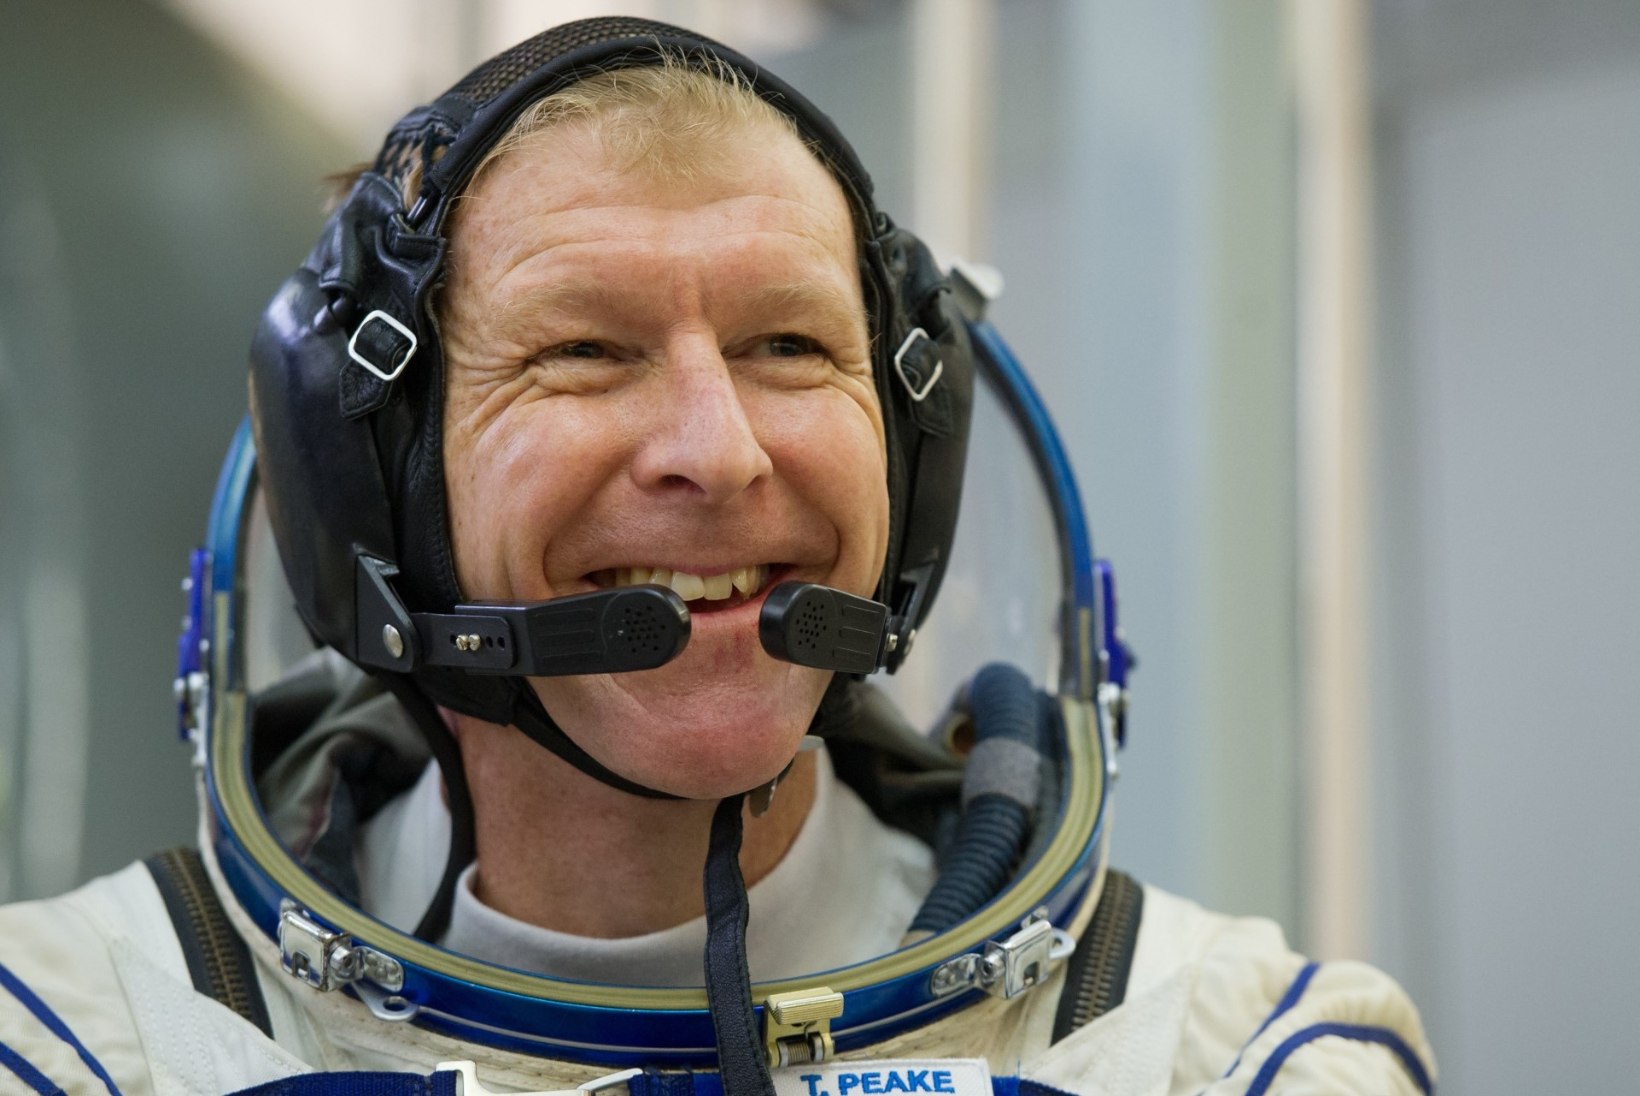 AASTA SPORDIHETK 2016? Astronaut jookseb Londoni maratoni kosmoses olles